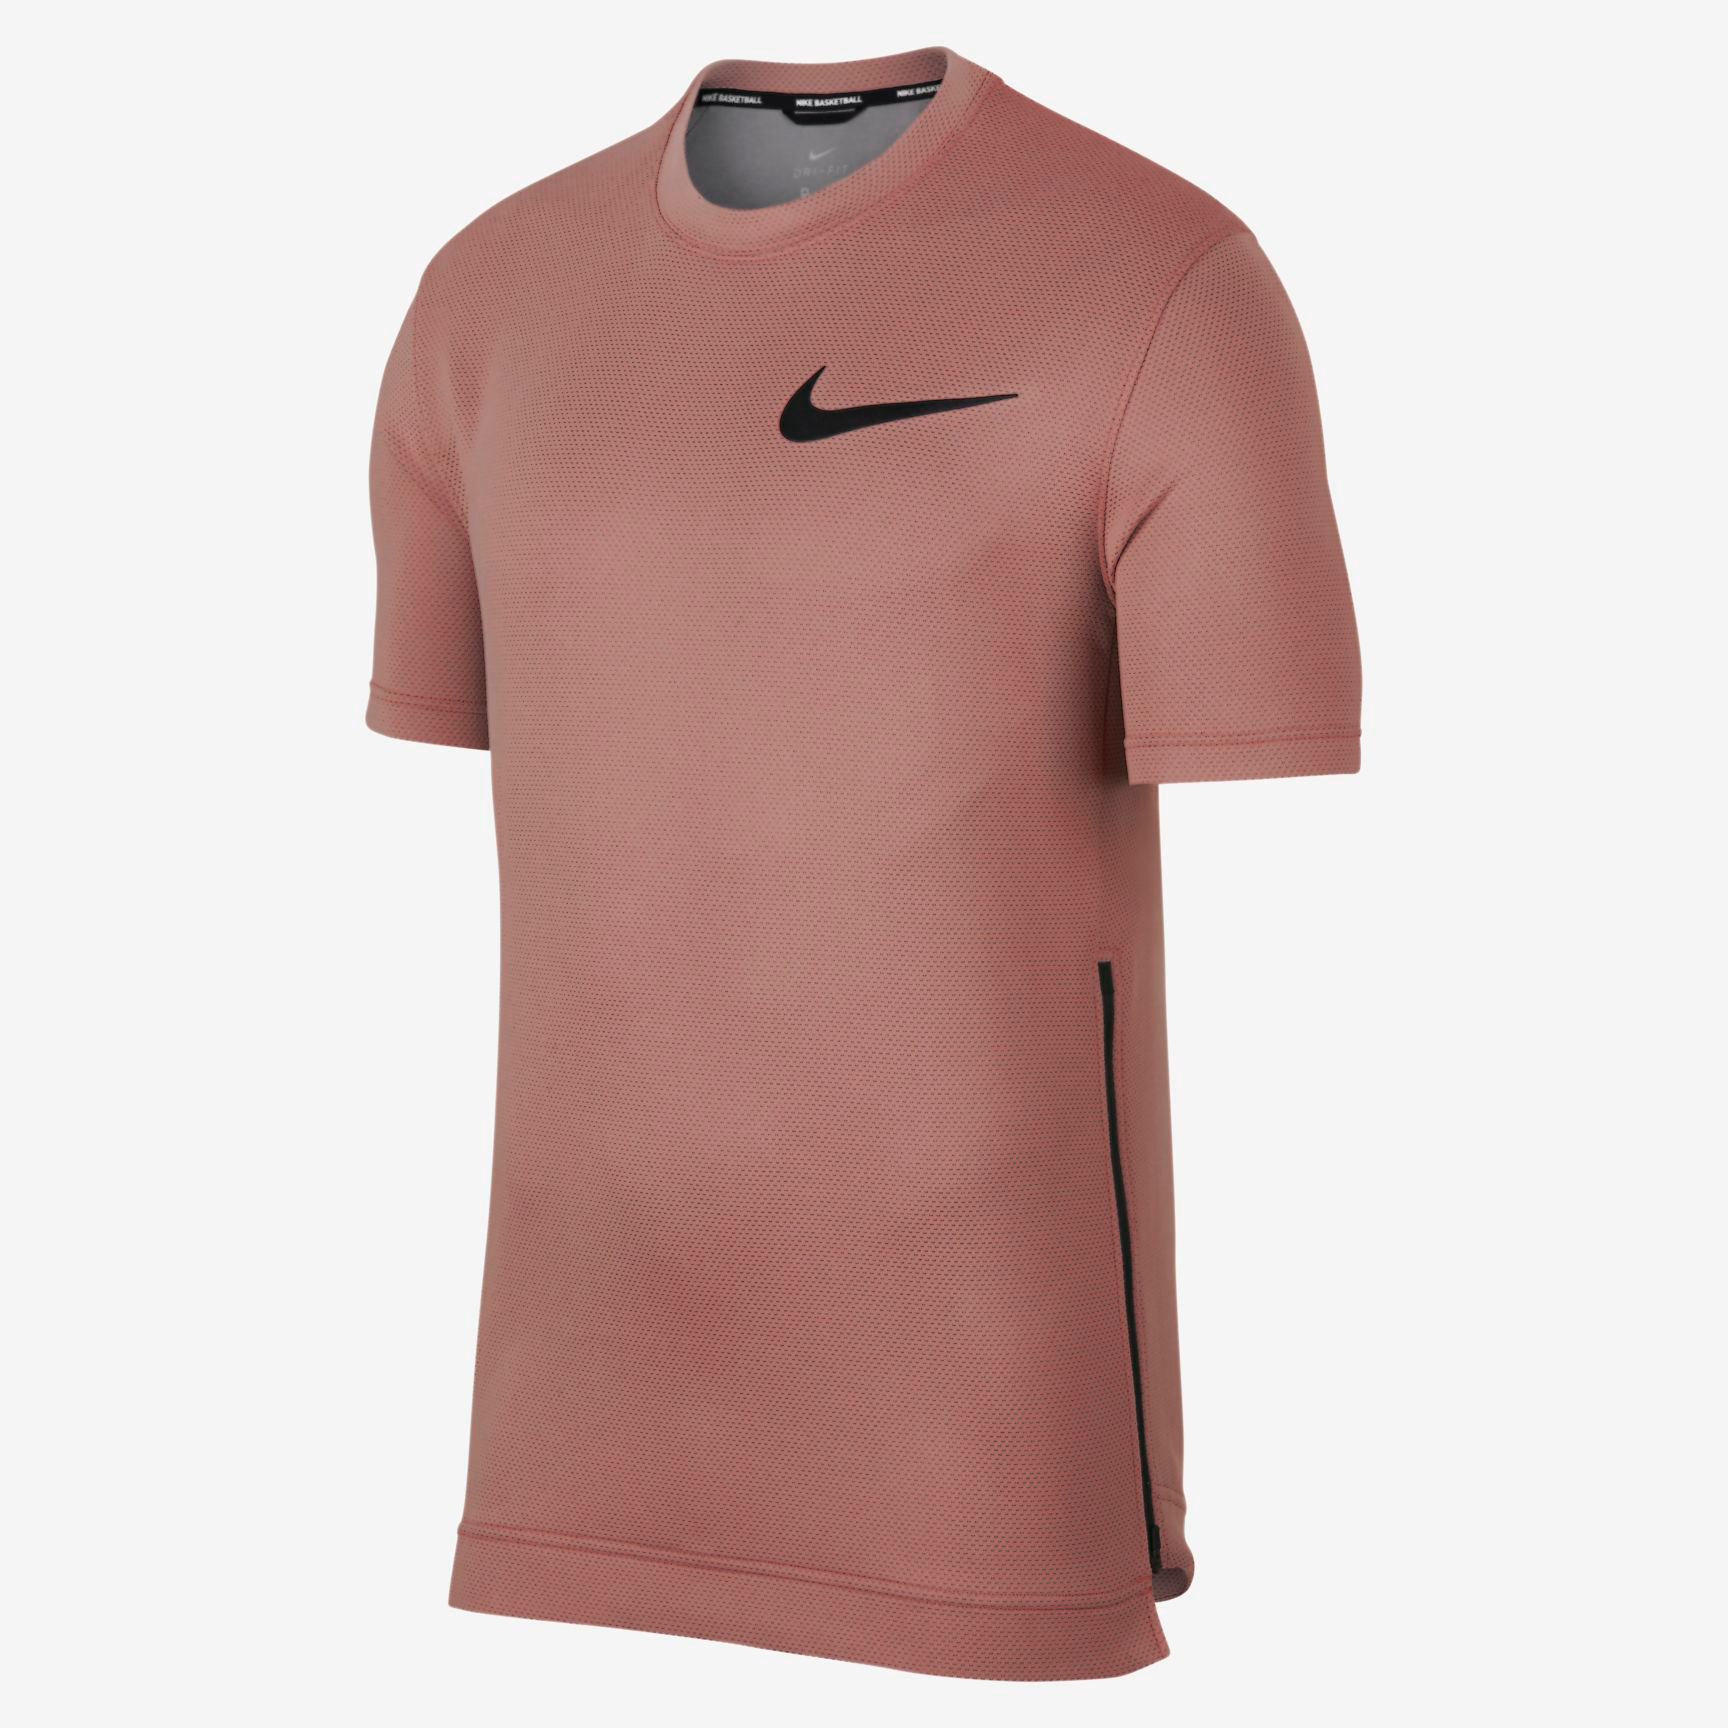 Nike Air Foamposite One Rust Pink Shirt Match | SneakerFits.com